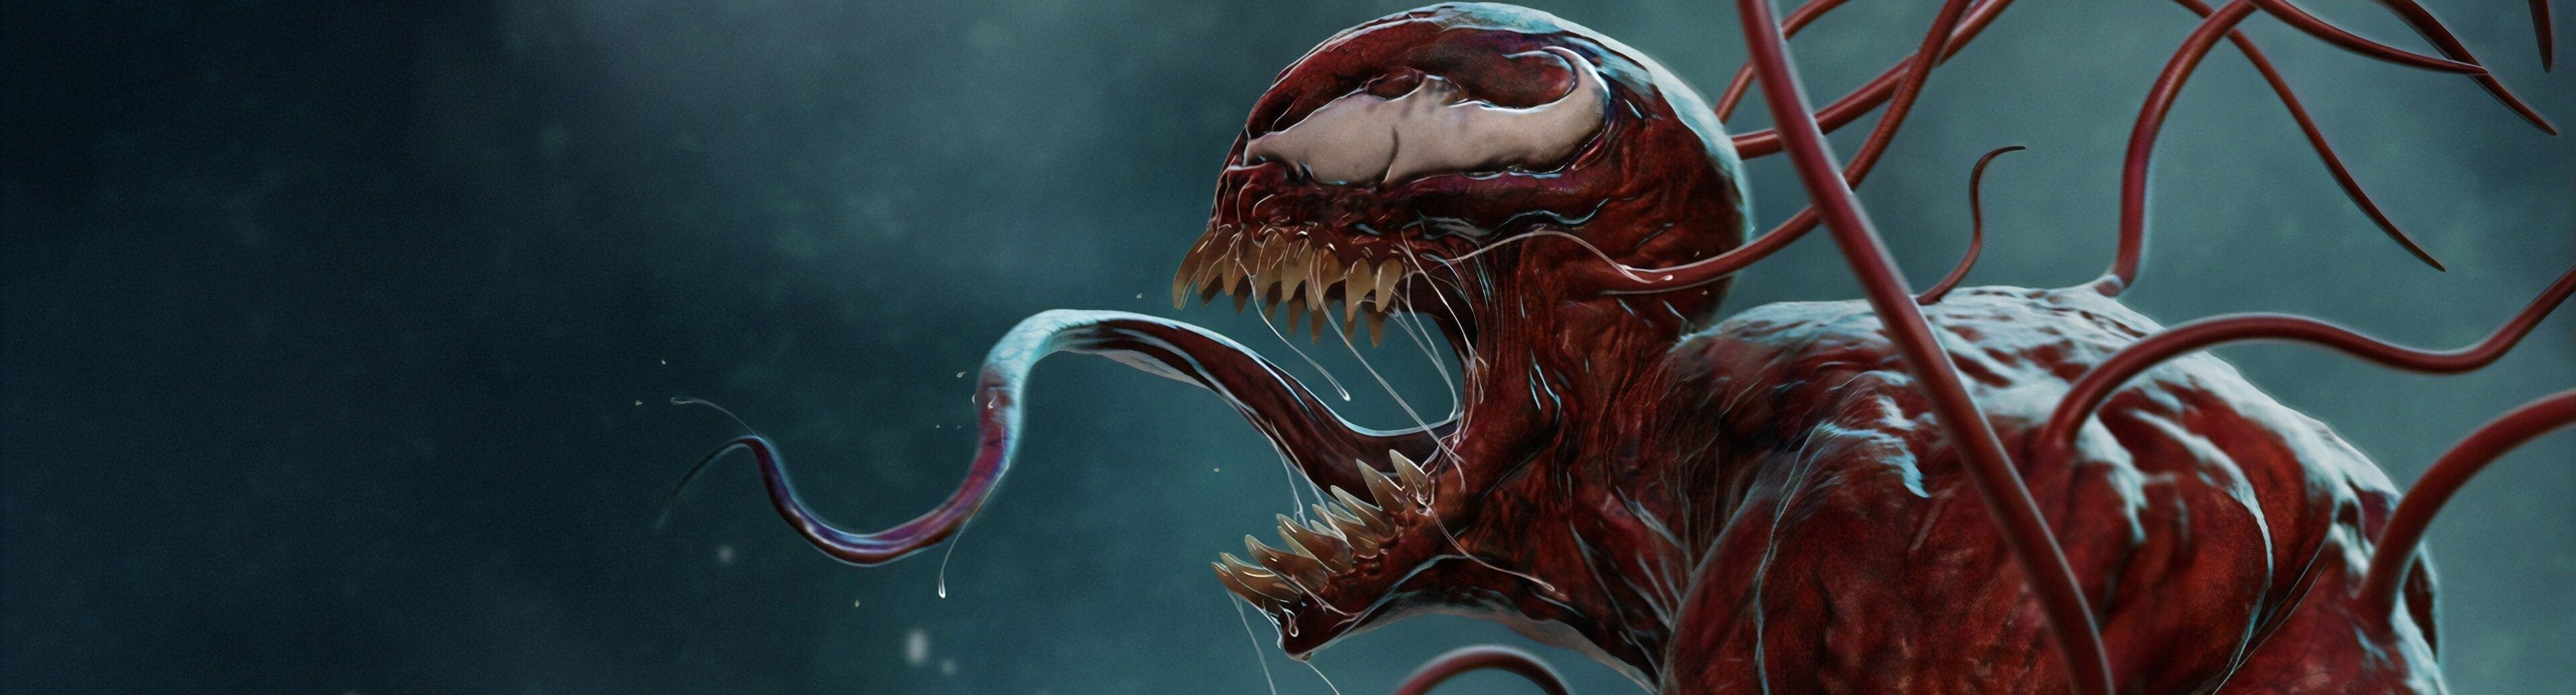 Streaming ITA Venom 2 - La furia di Carnage's background image'